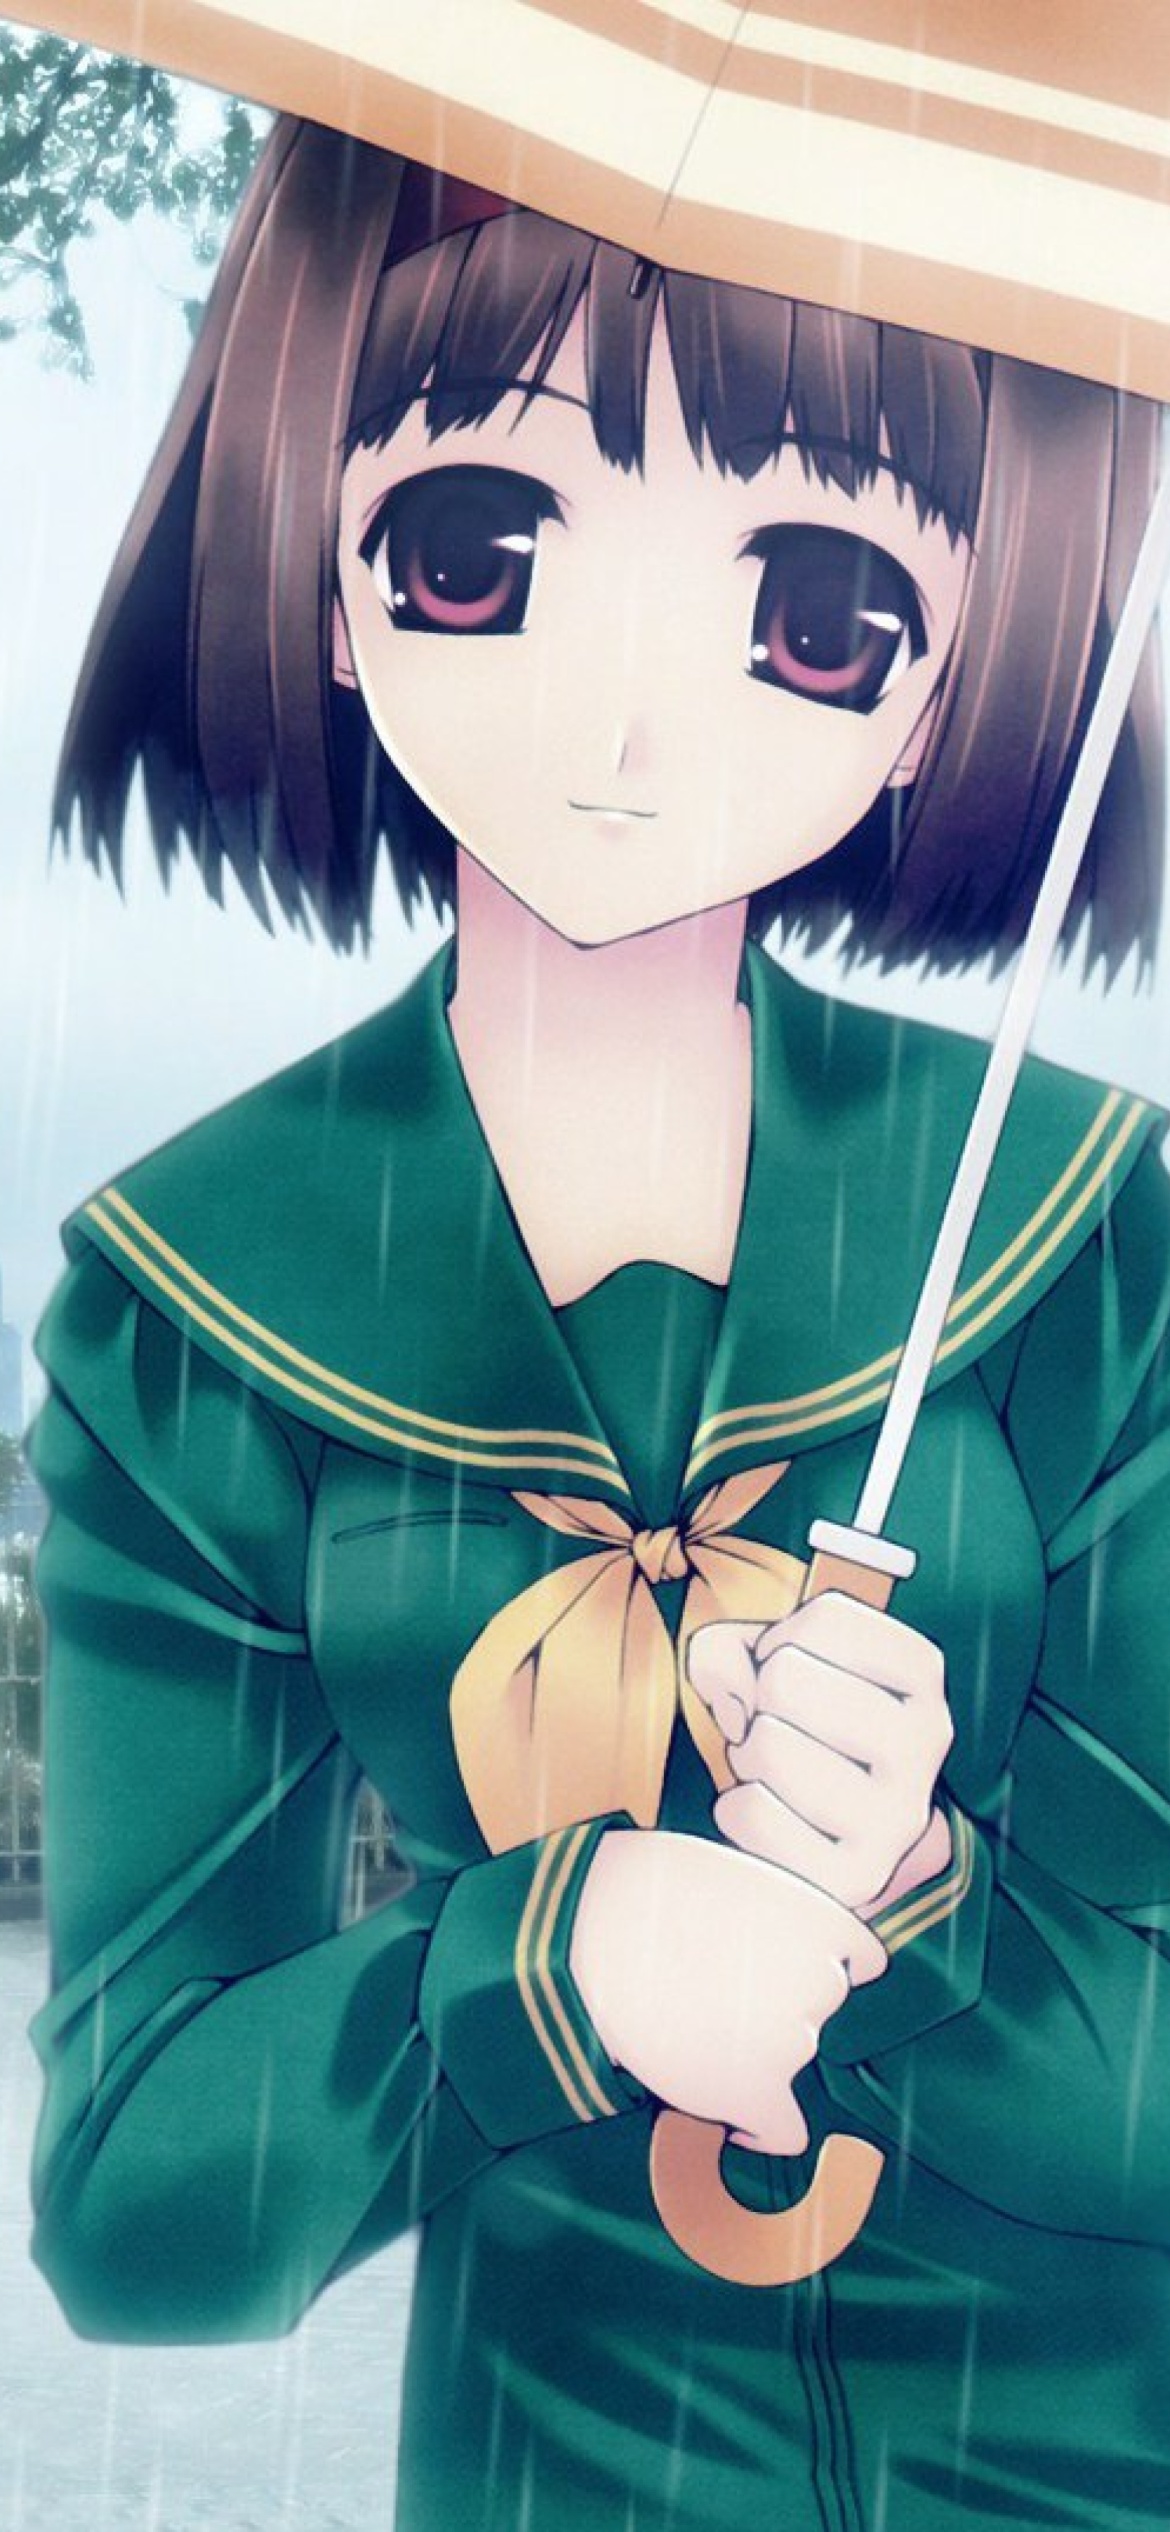 Anime girl in rain Wallpaper for 1170x2532